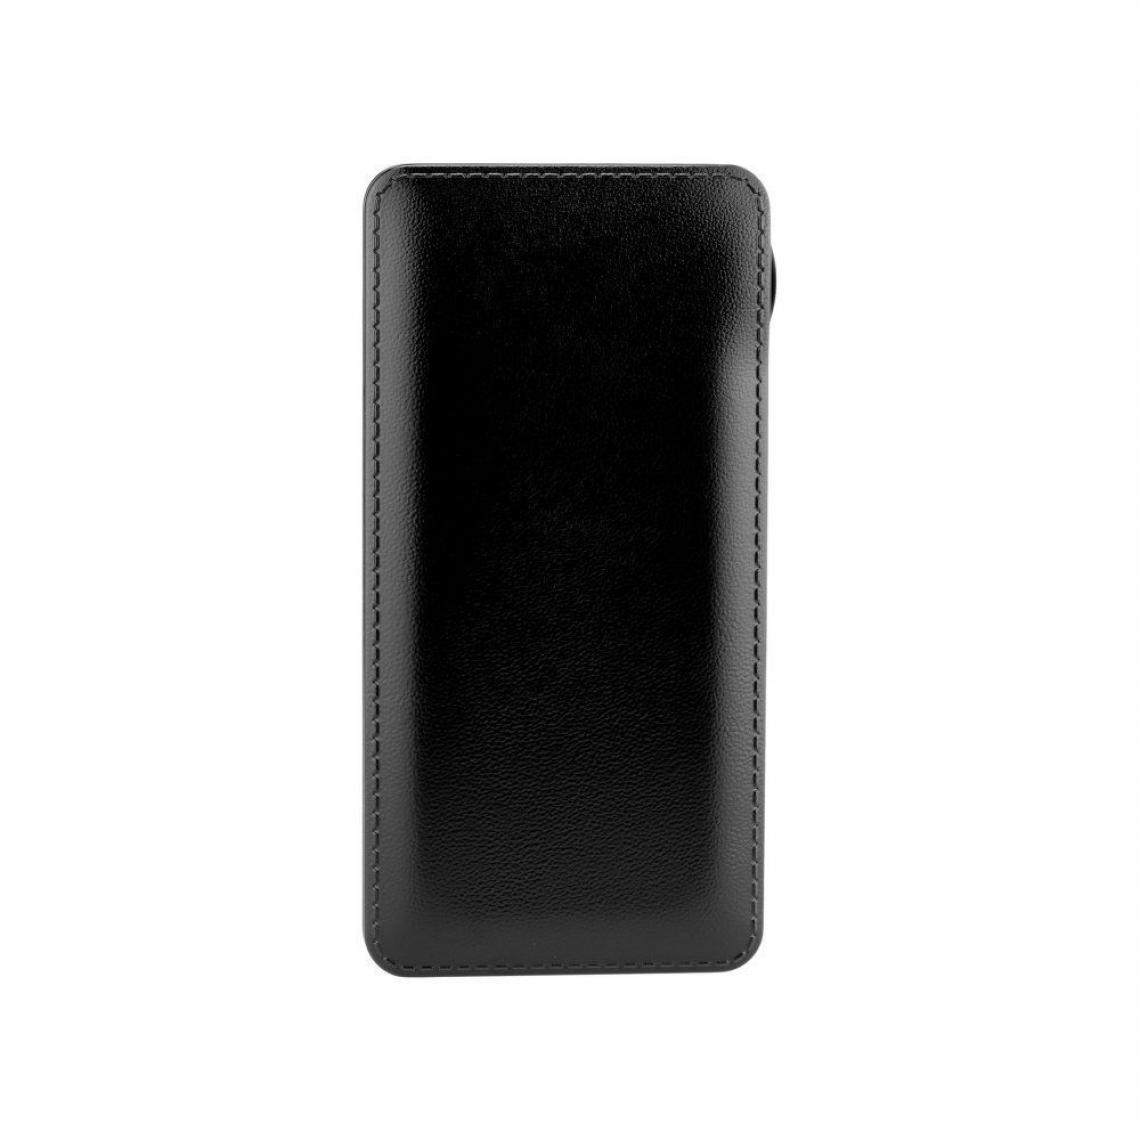 Ozzzo - Chargeur batterie externe 10000mAh powerbank ozzzo noir pour UMiDIGI A9 - Autres accessoires smartphone